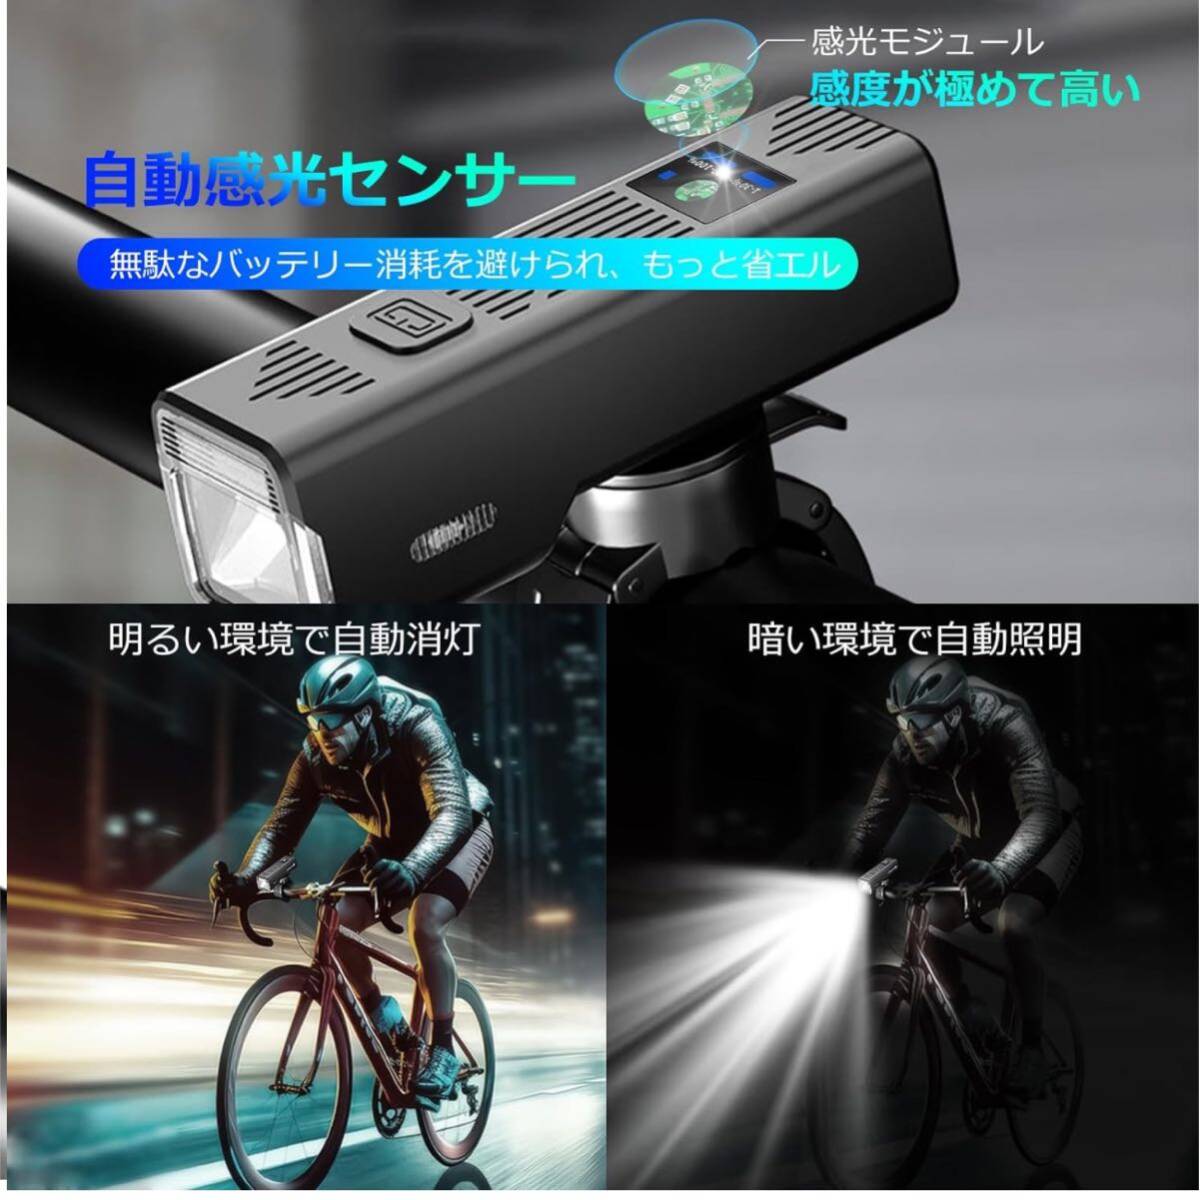 【開封のみ】HiiPeak ★自転車 ライト 3000mAh大容量 自転車ヘッドライト 防水 自動点灯モード USB充電式 LEDヘッドライト テールライト_画像2